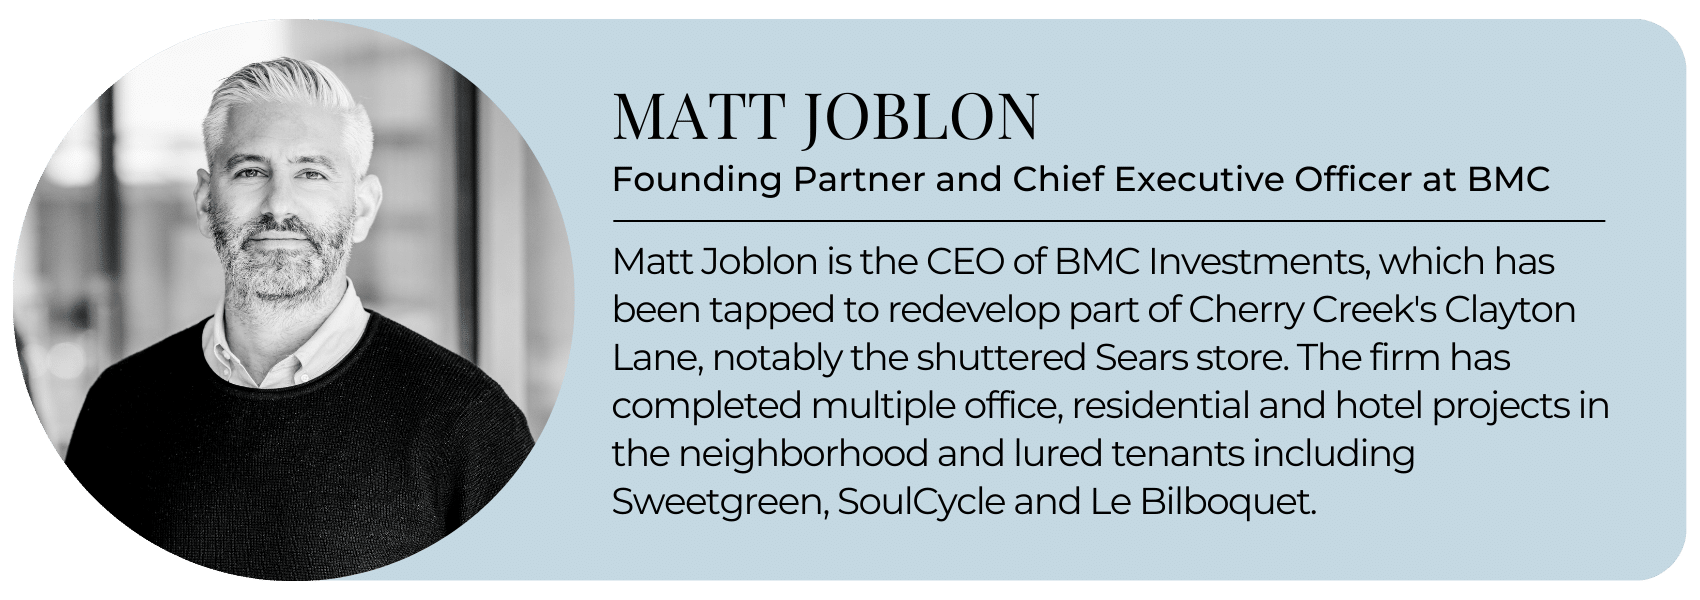 Matt Joblon 1 1